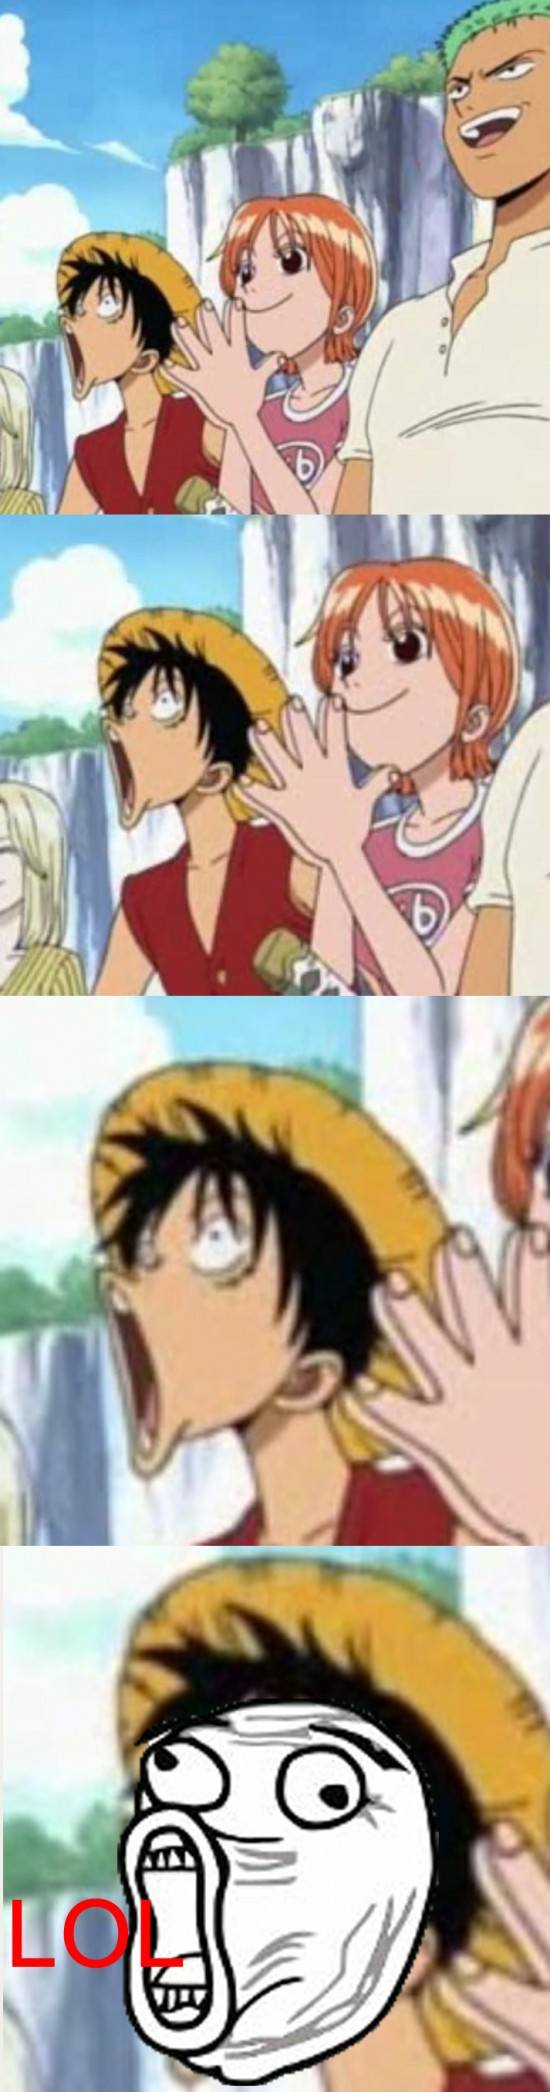 LOL,Luffy,One Piece